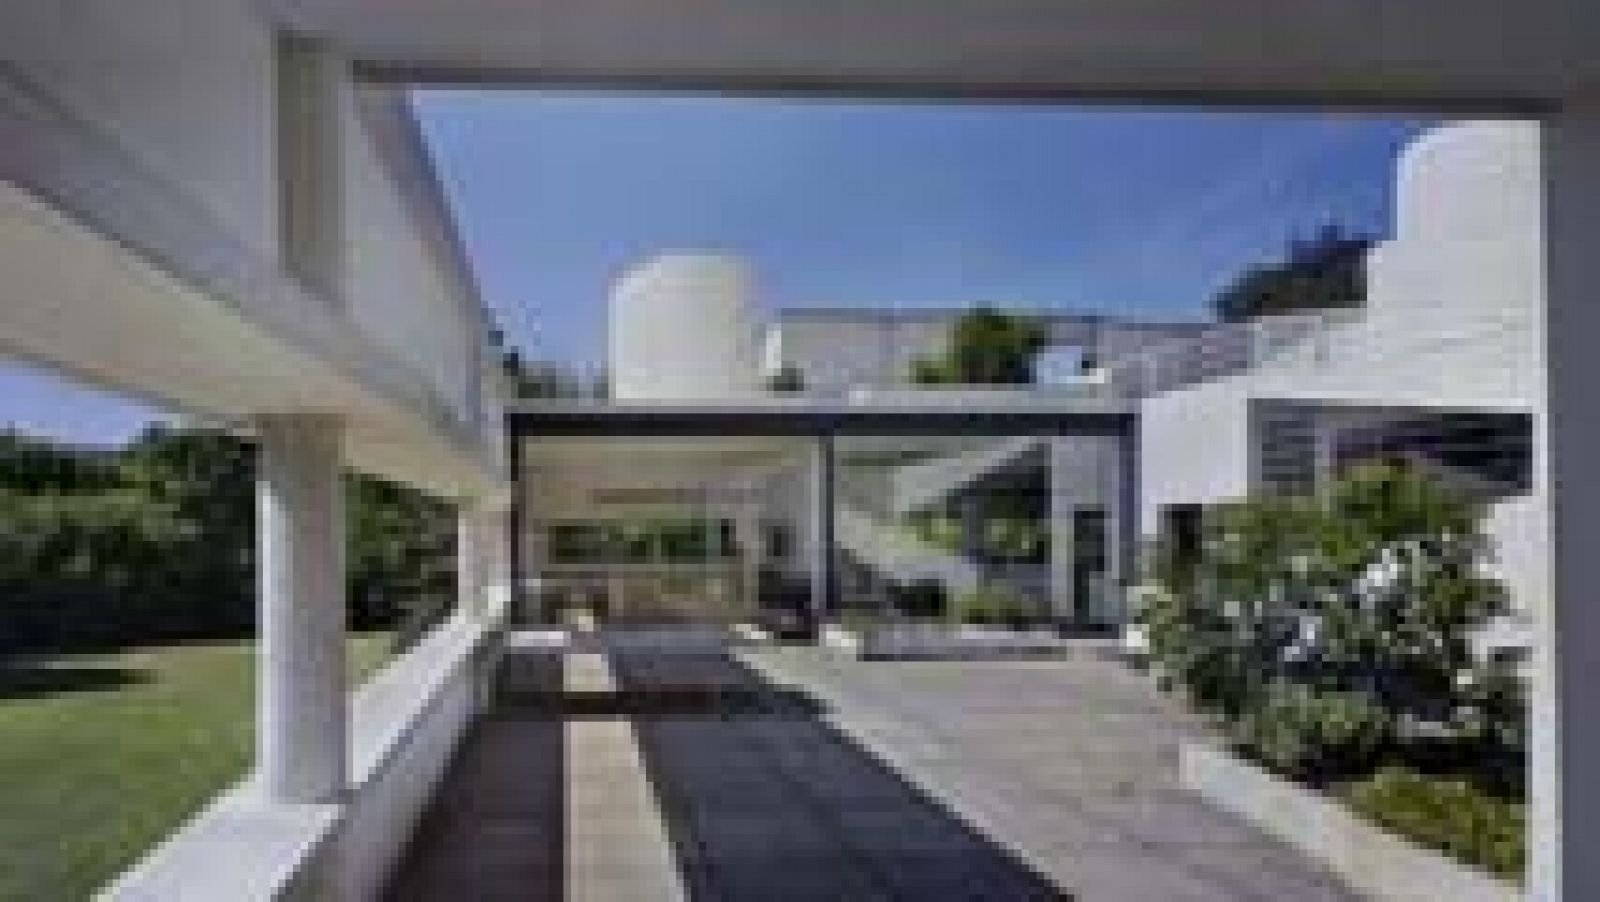 Se presenta en Madrid una exposición sobre el arquitecto Le Corbusier 